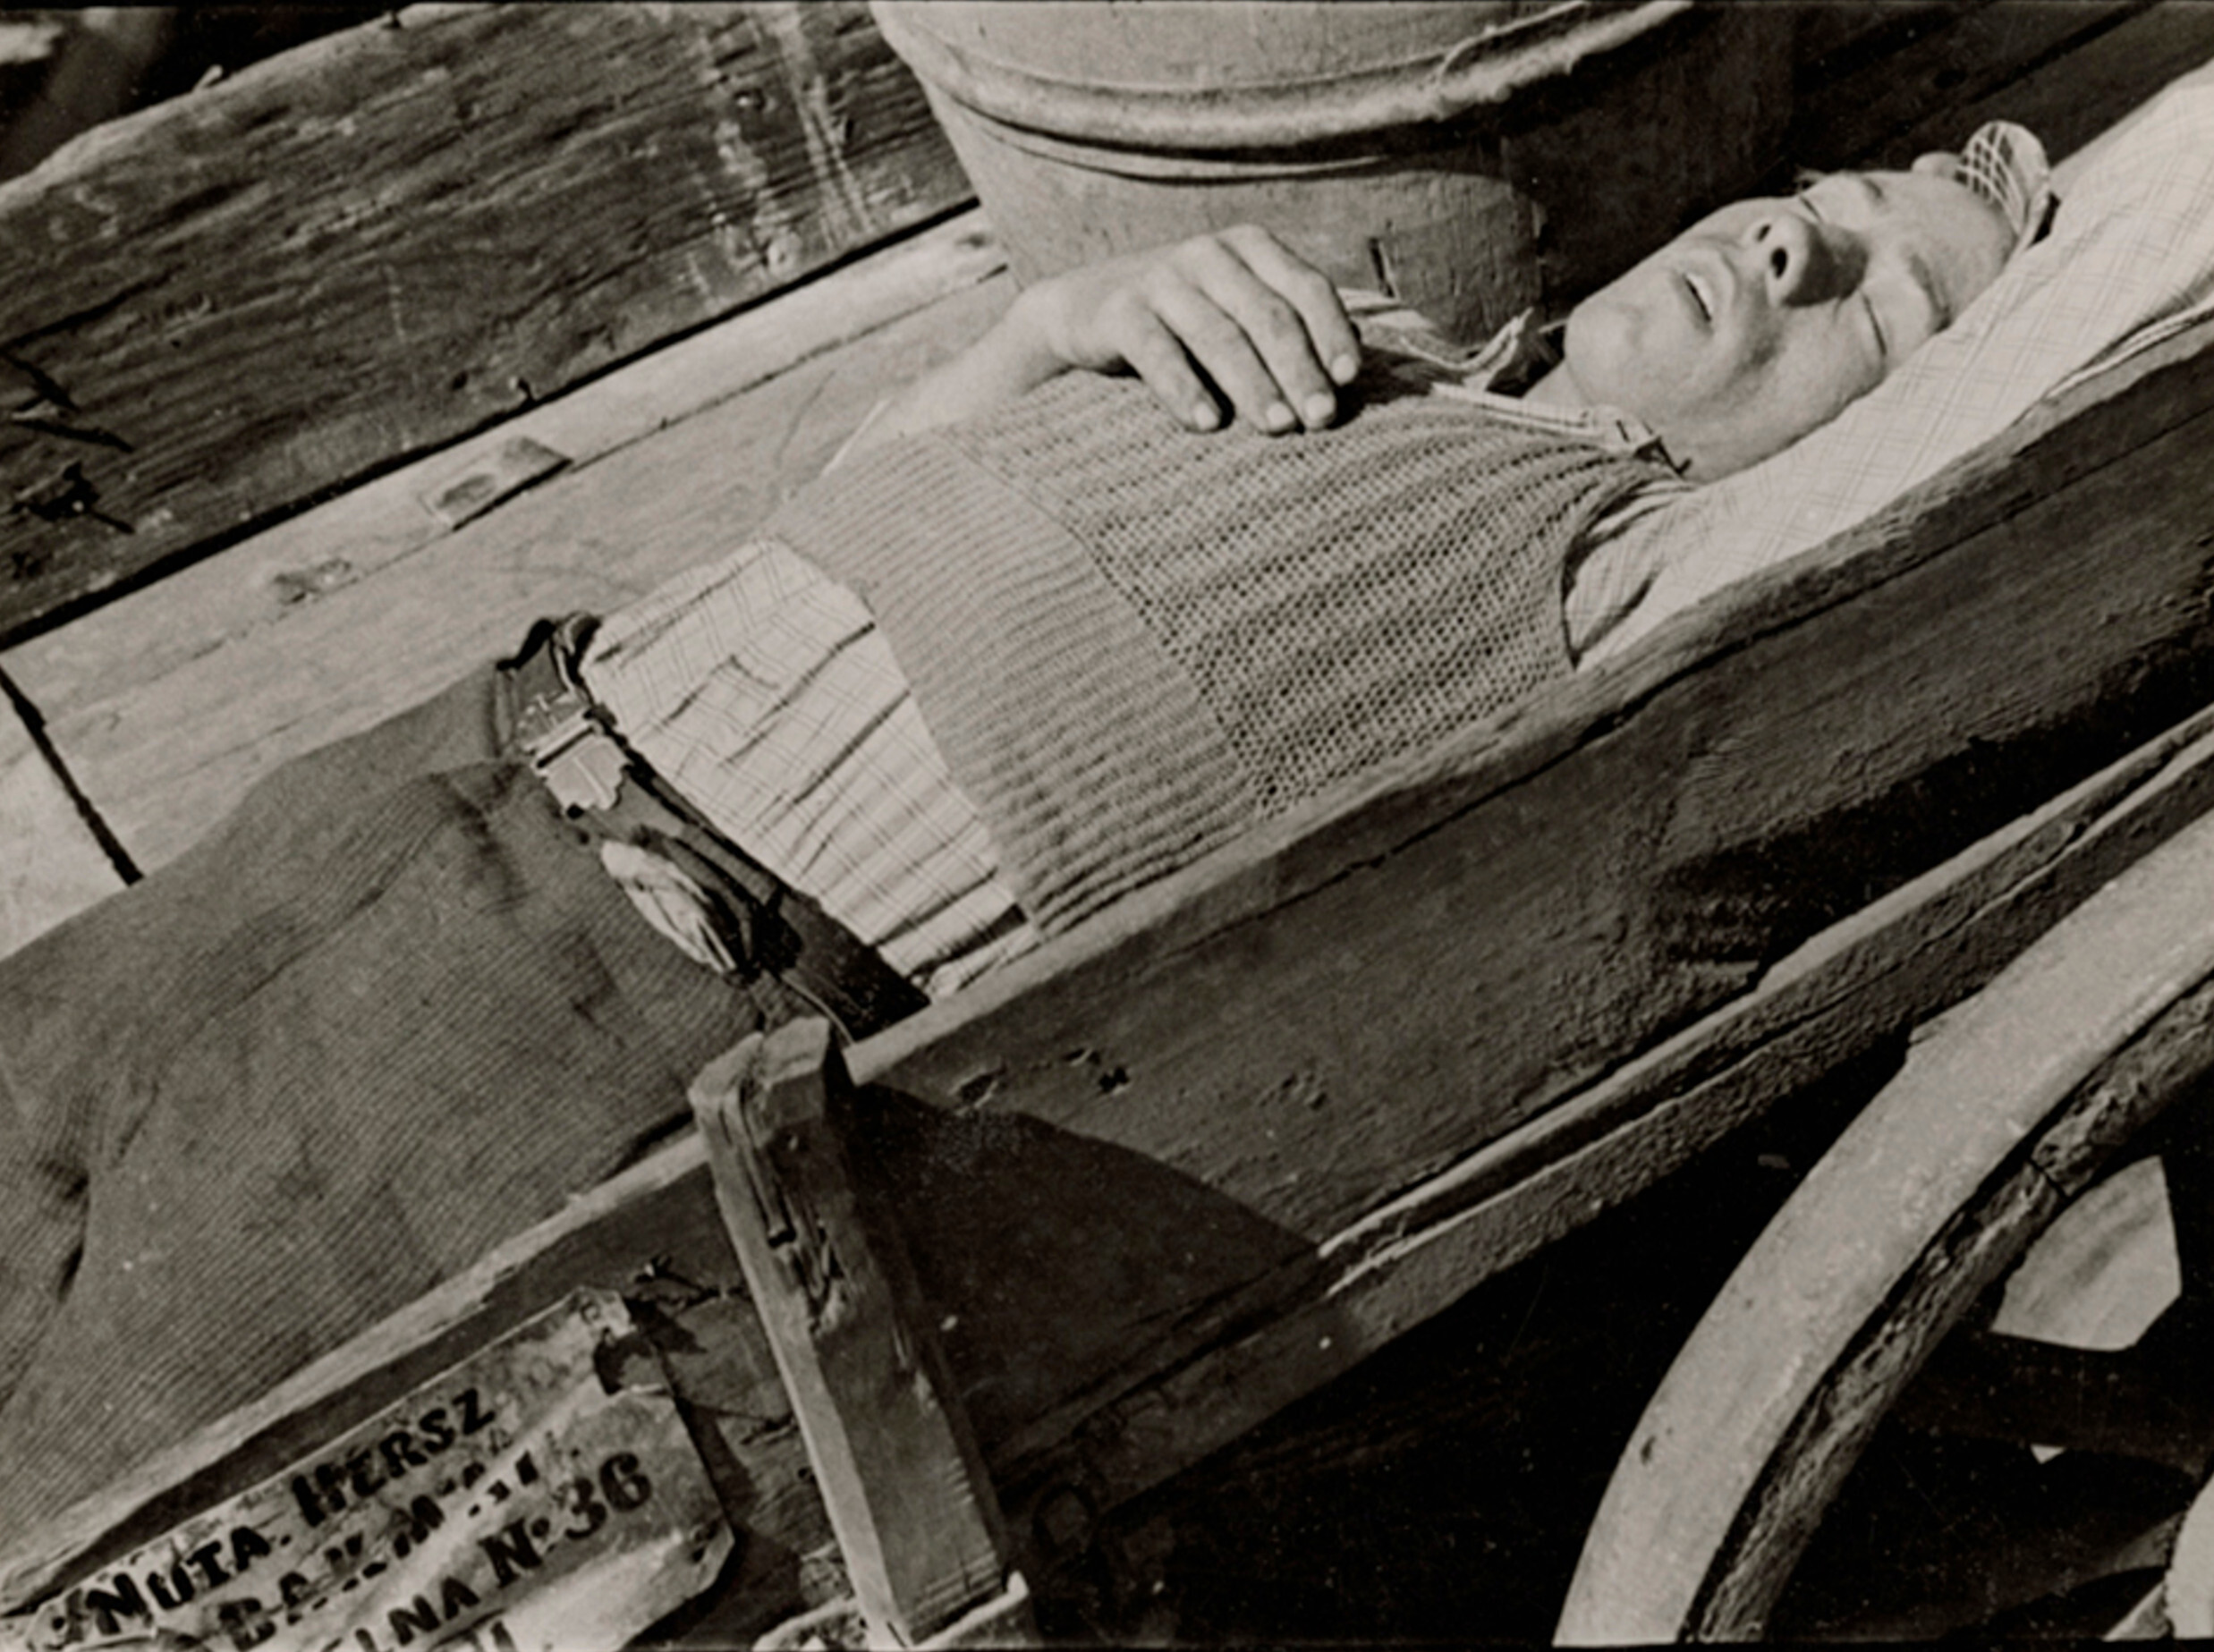 Измученный. Перевозчик тяжелых грузов, Варшава, ок. 1935-38 гг. Фотограф Роман Вишняк